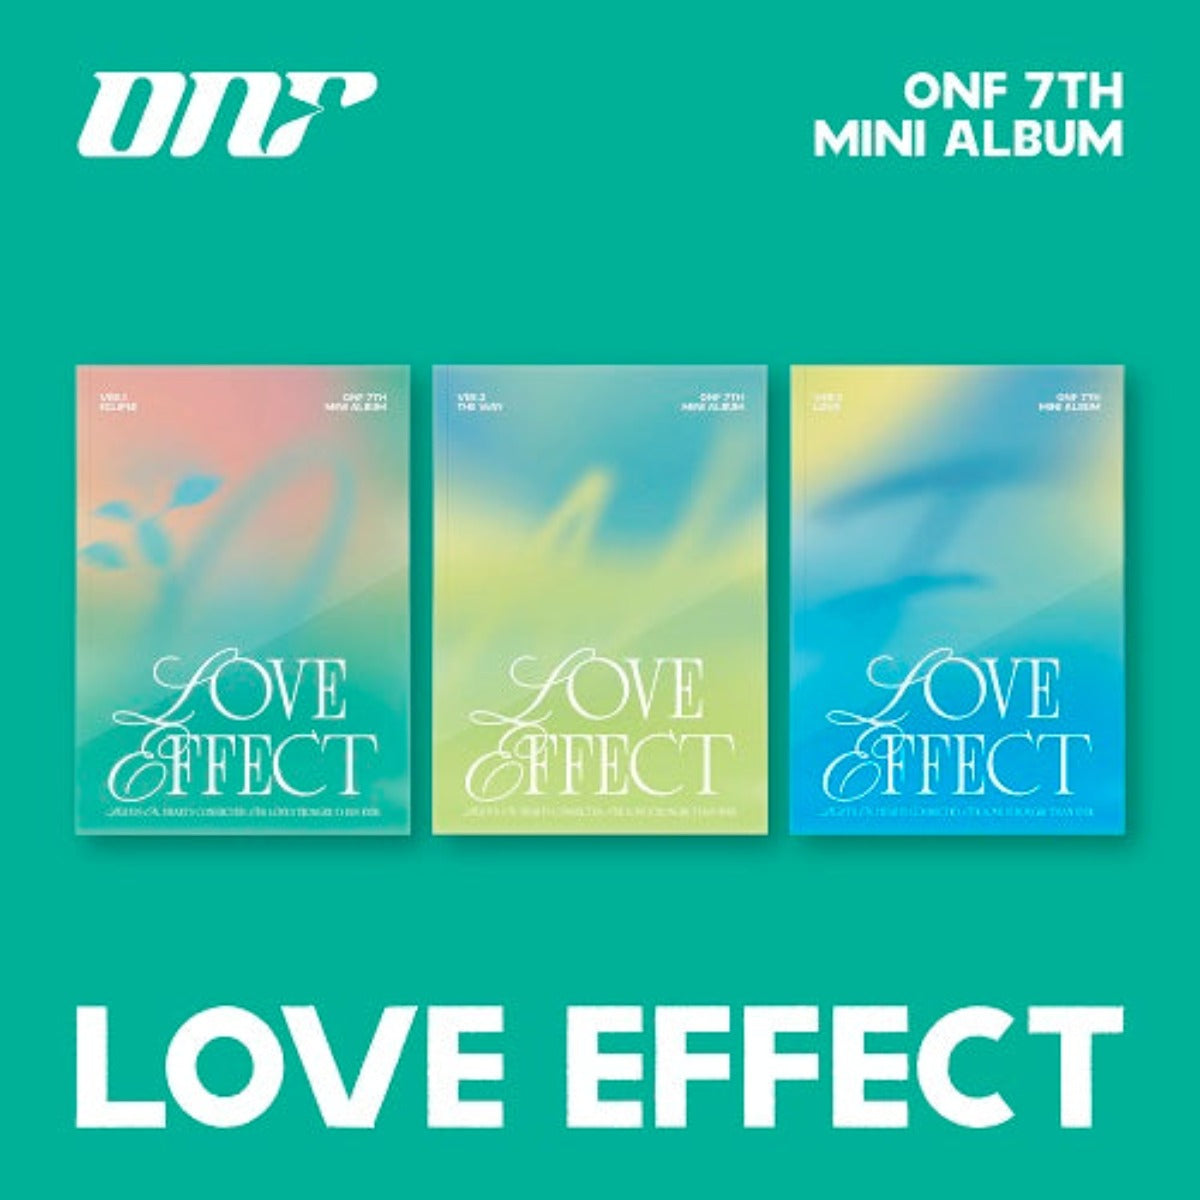 ONF - LOVE EFFECT 7TH MINI ALBUM (Random Cover)